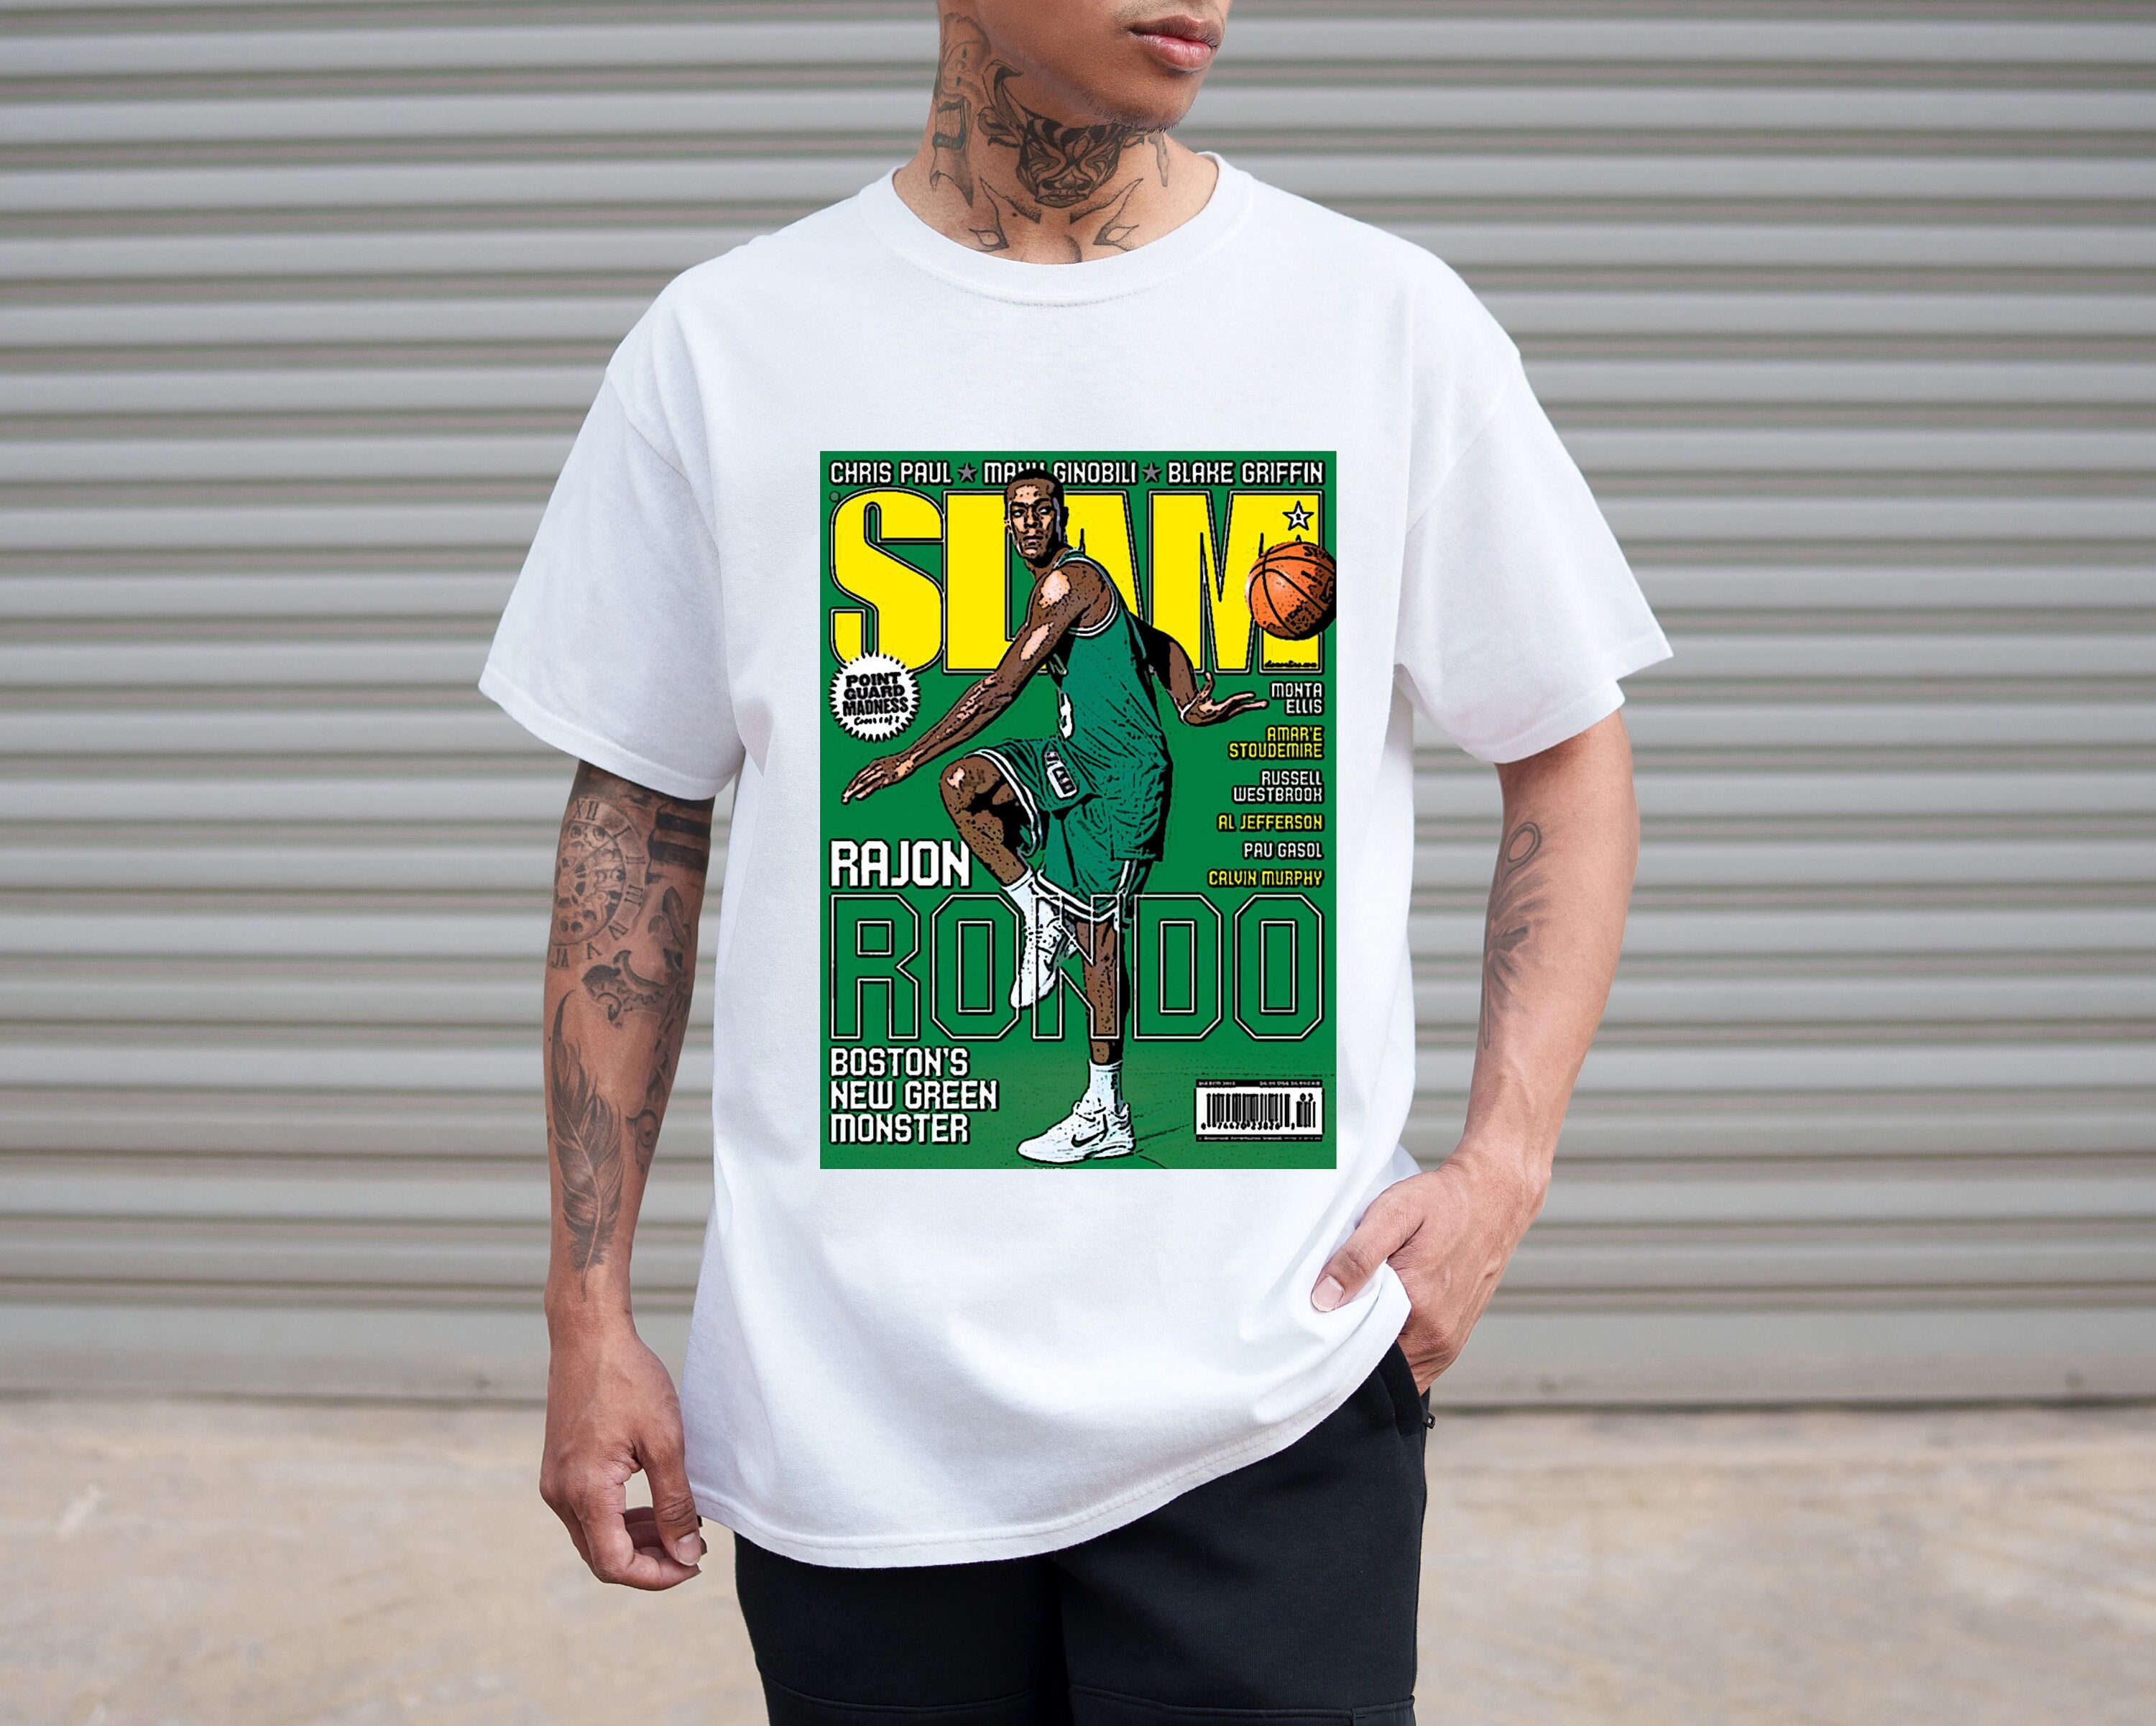 Design bootleg tee shirt 90s vintage rap nba sports shirt by Firoz37